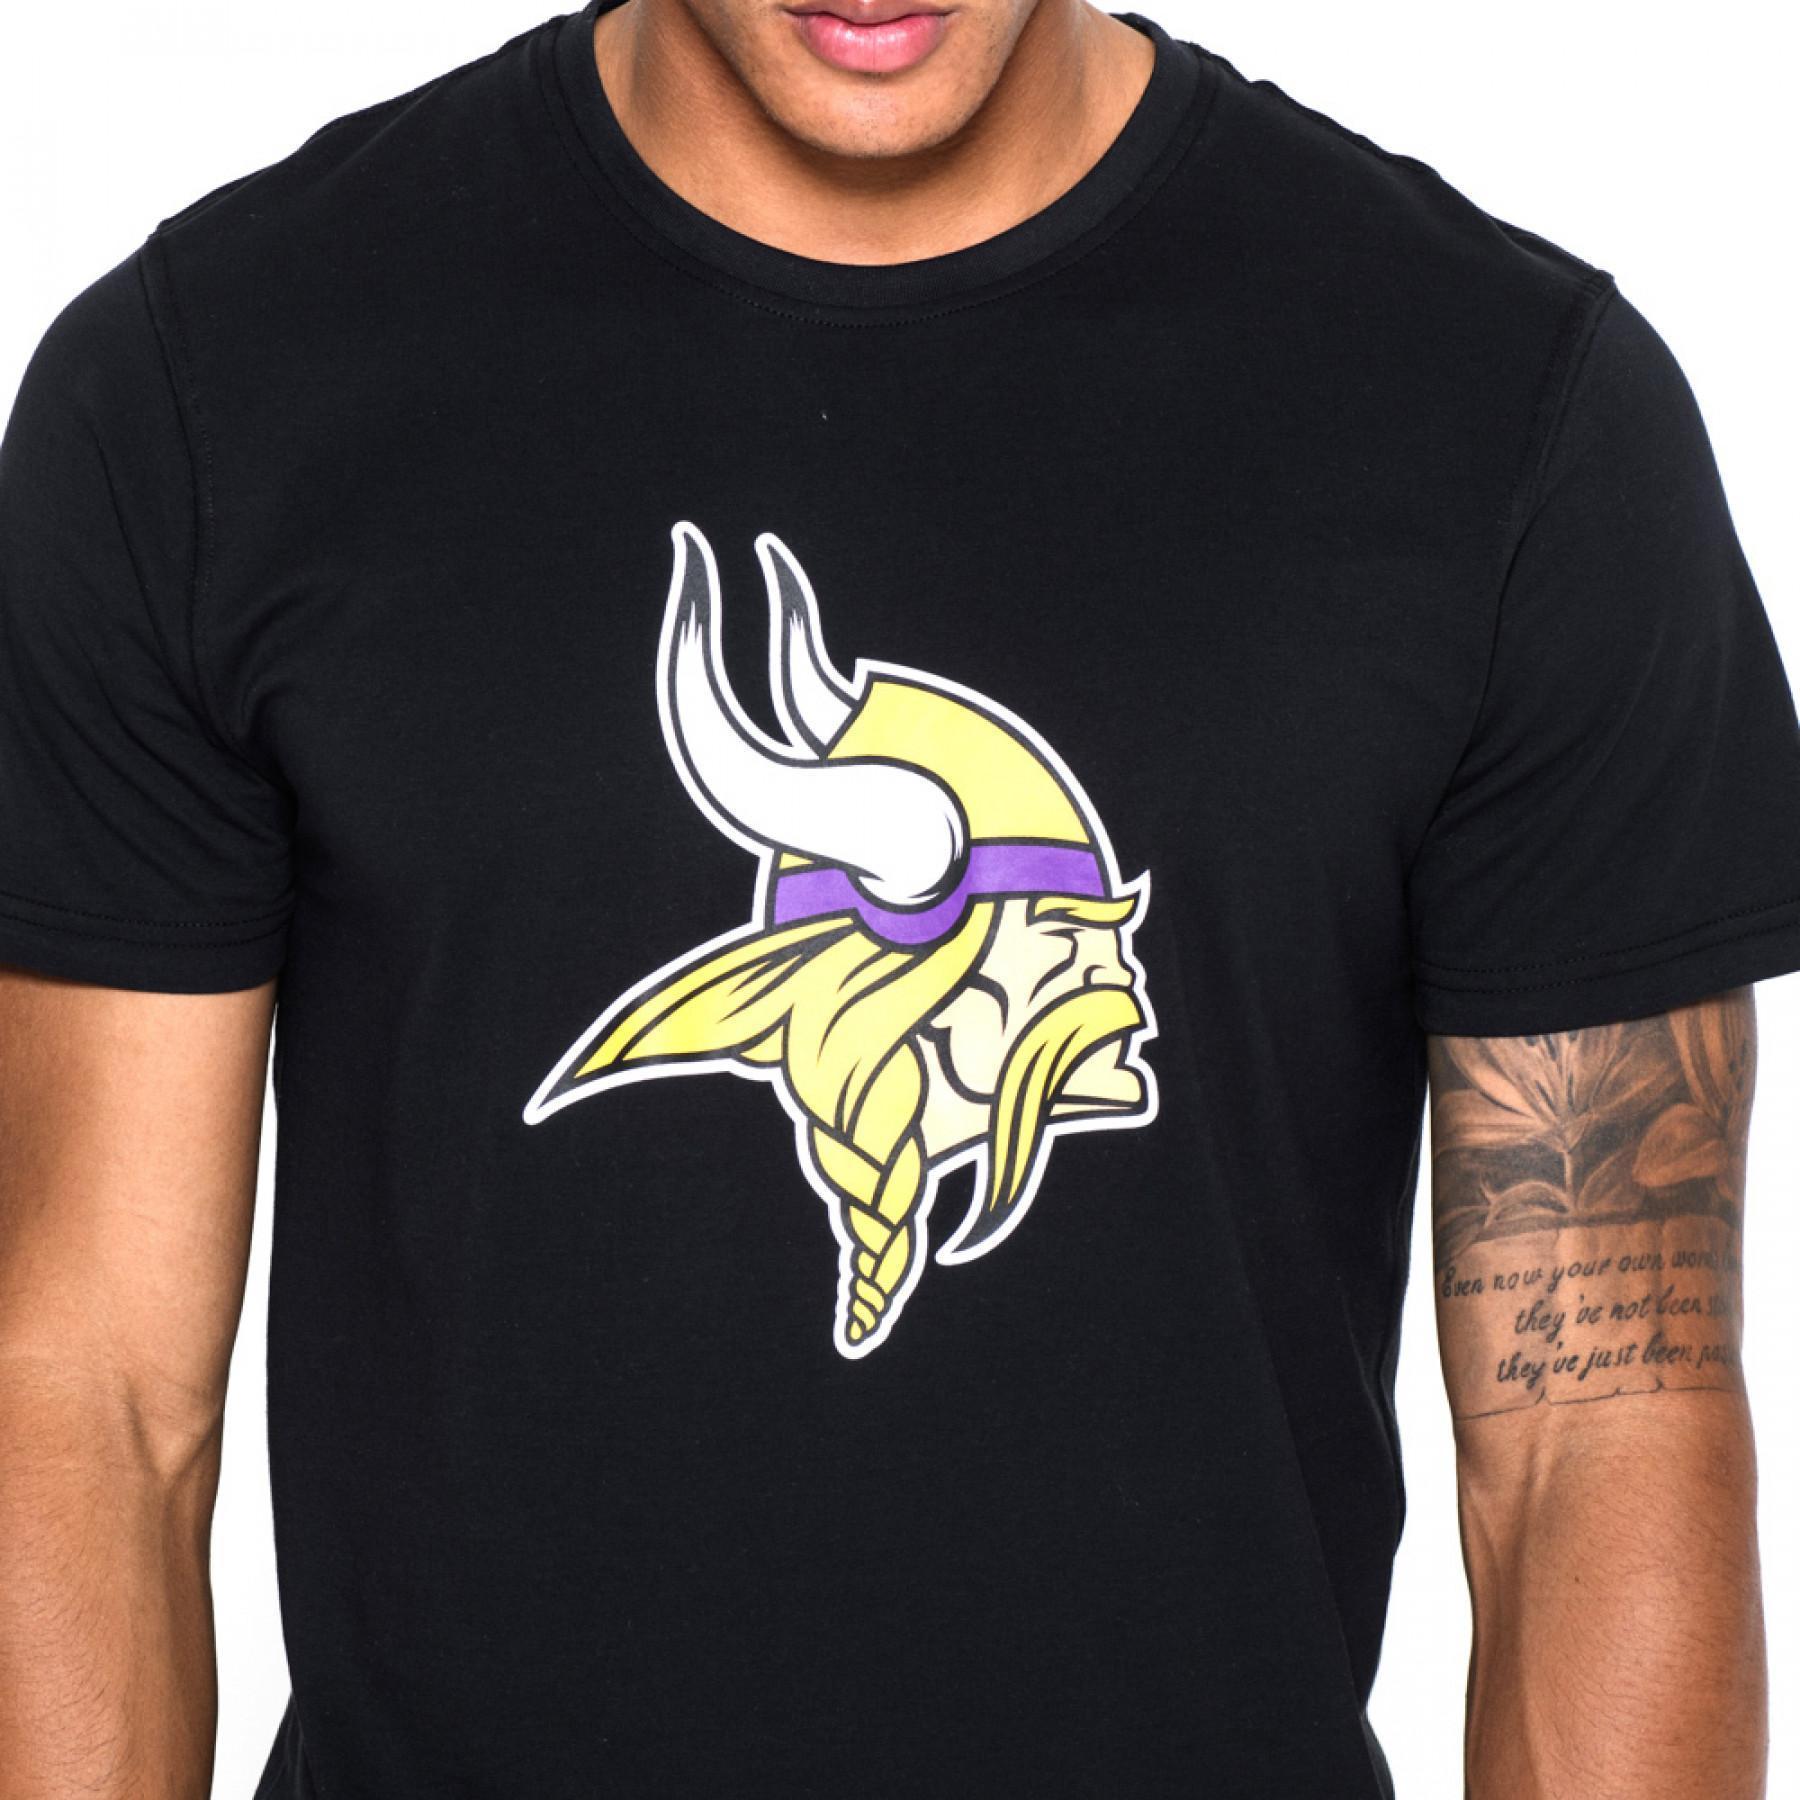  New EraT - s h i r t   logo Minnesota Vikings